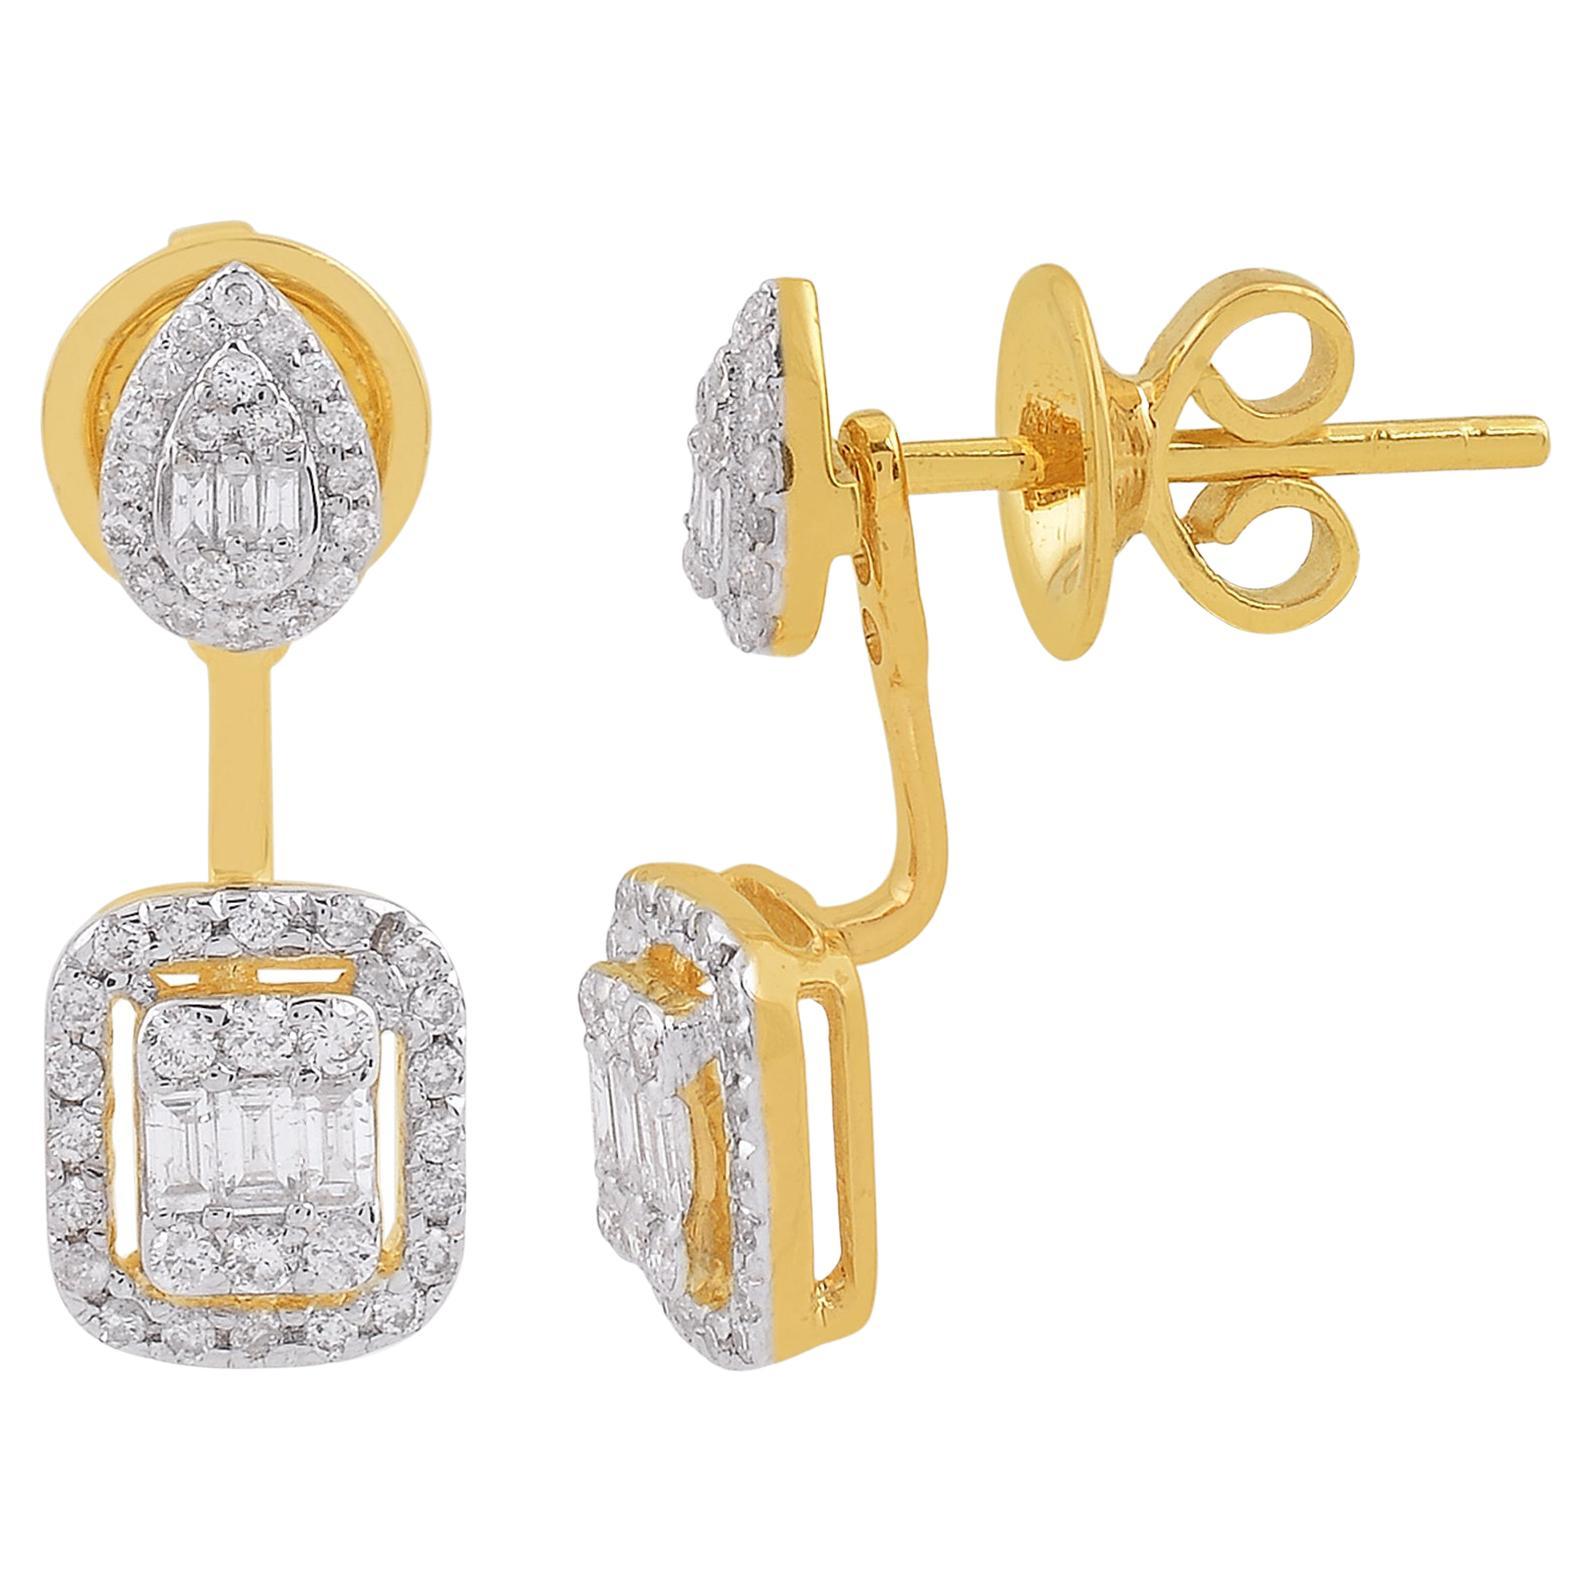 Boucles d'oreilles veste en or jaune 14 carats avec diamants naturels de 0,61 carat